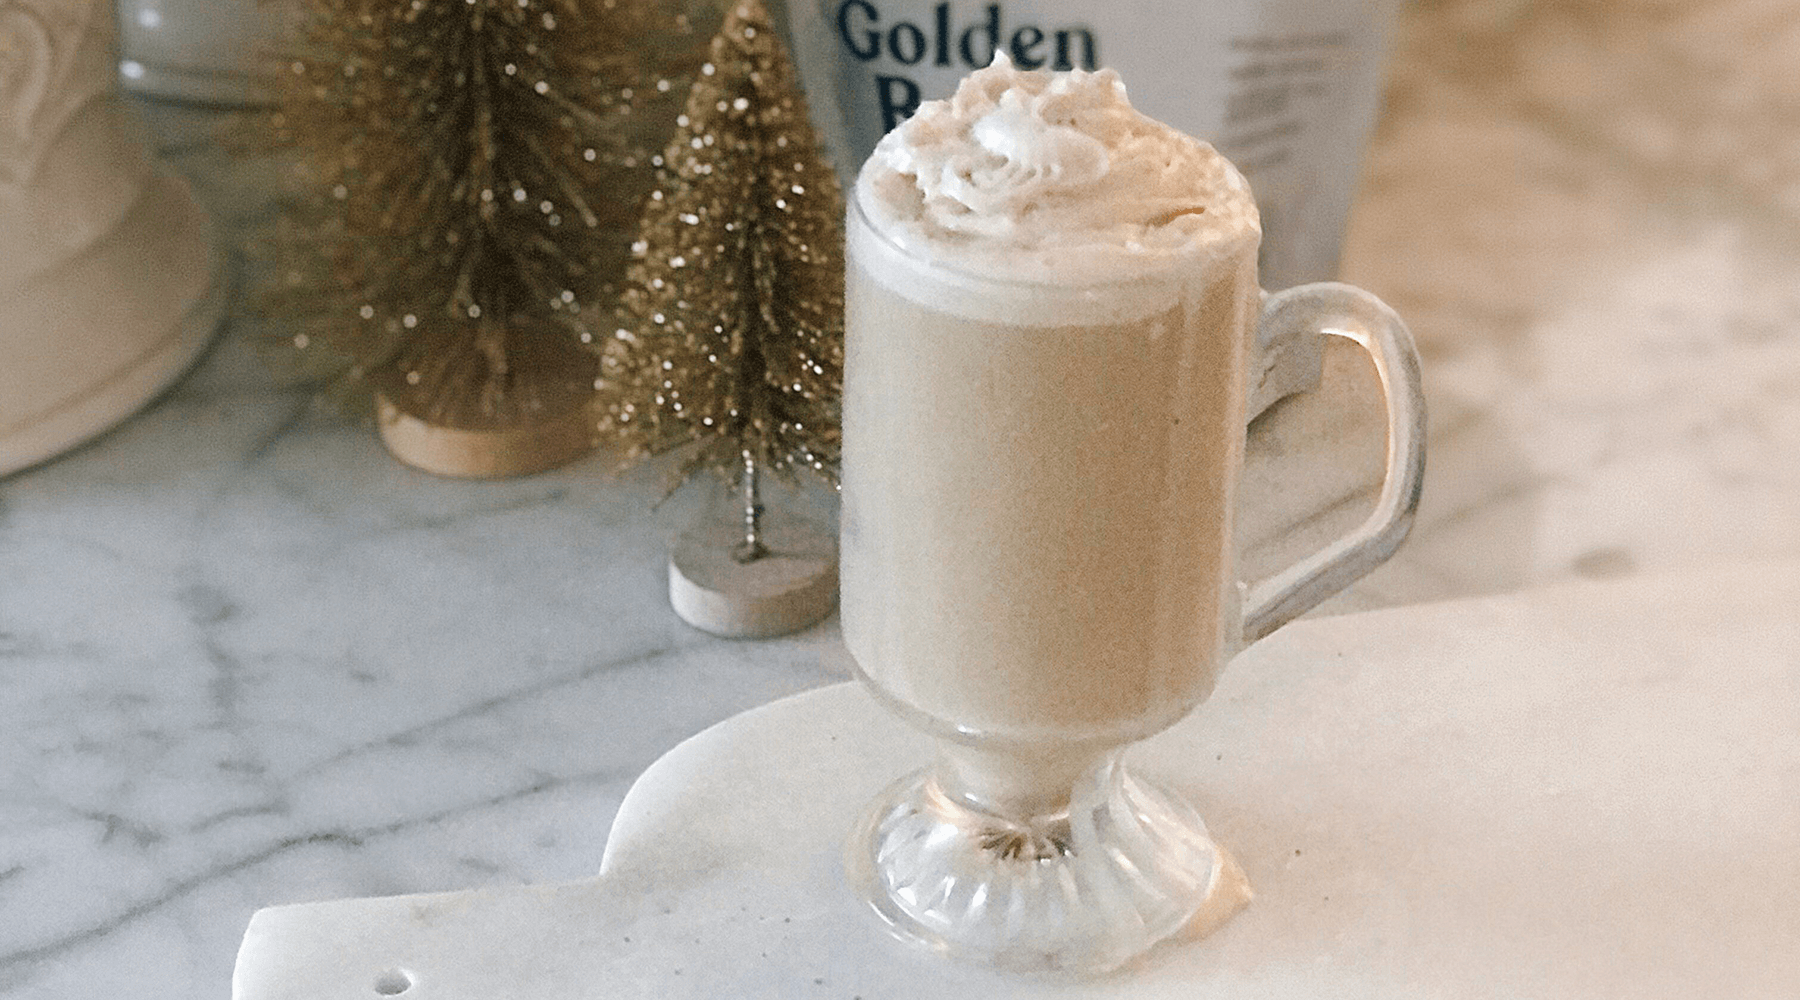 Irish Cream Coffee Recipe: "Golden Irish Coffee"